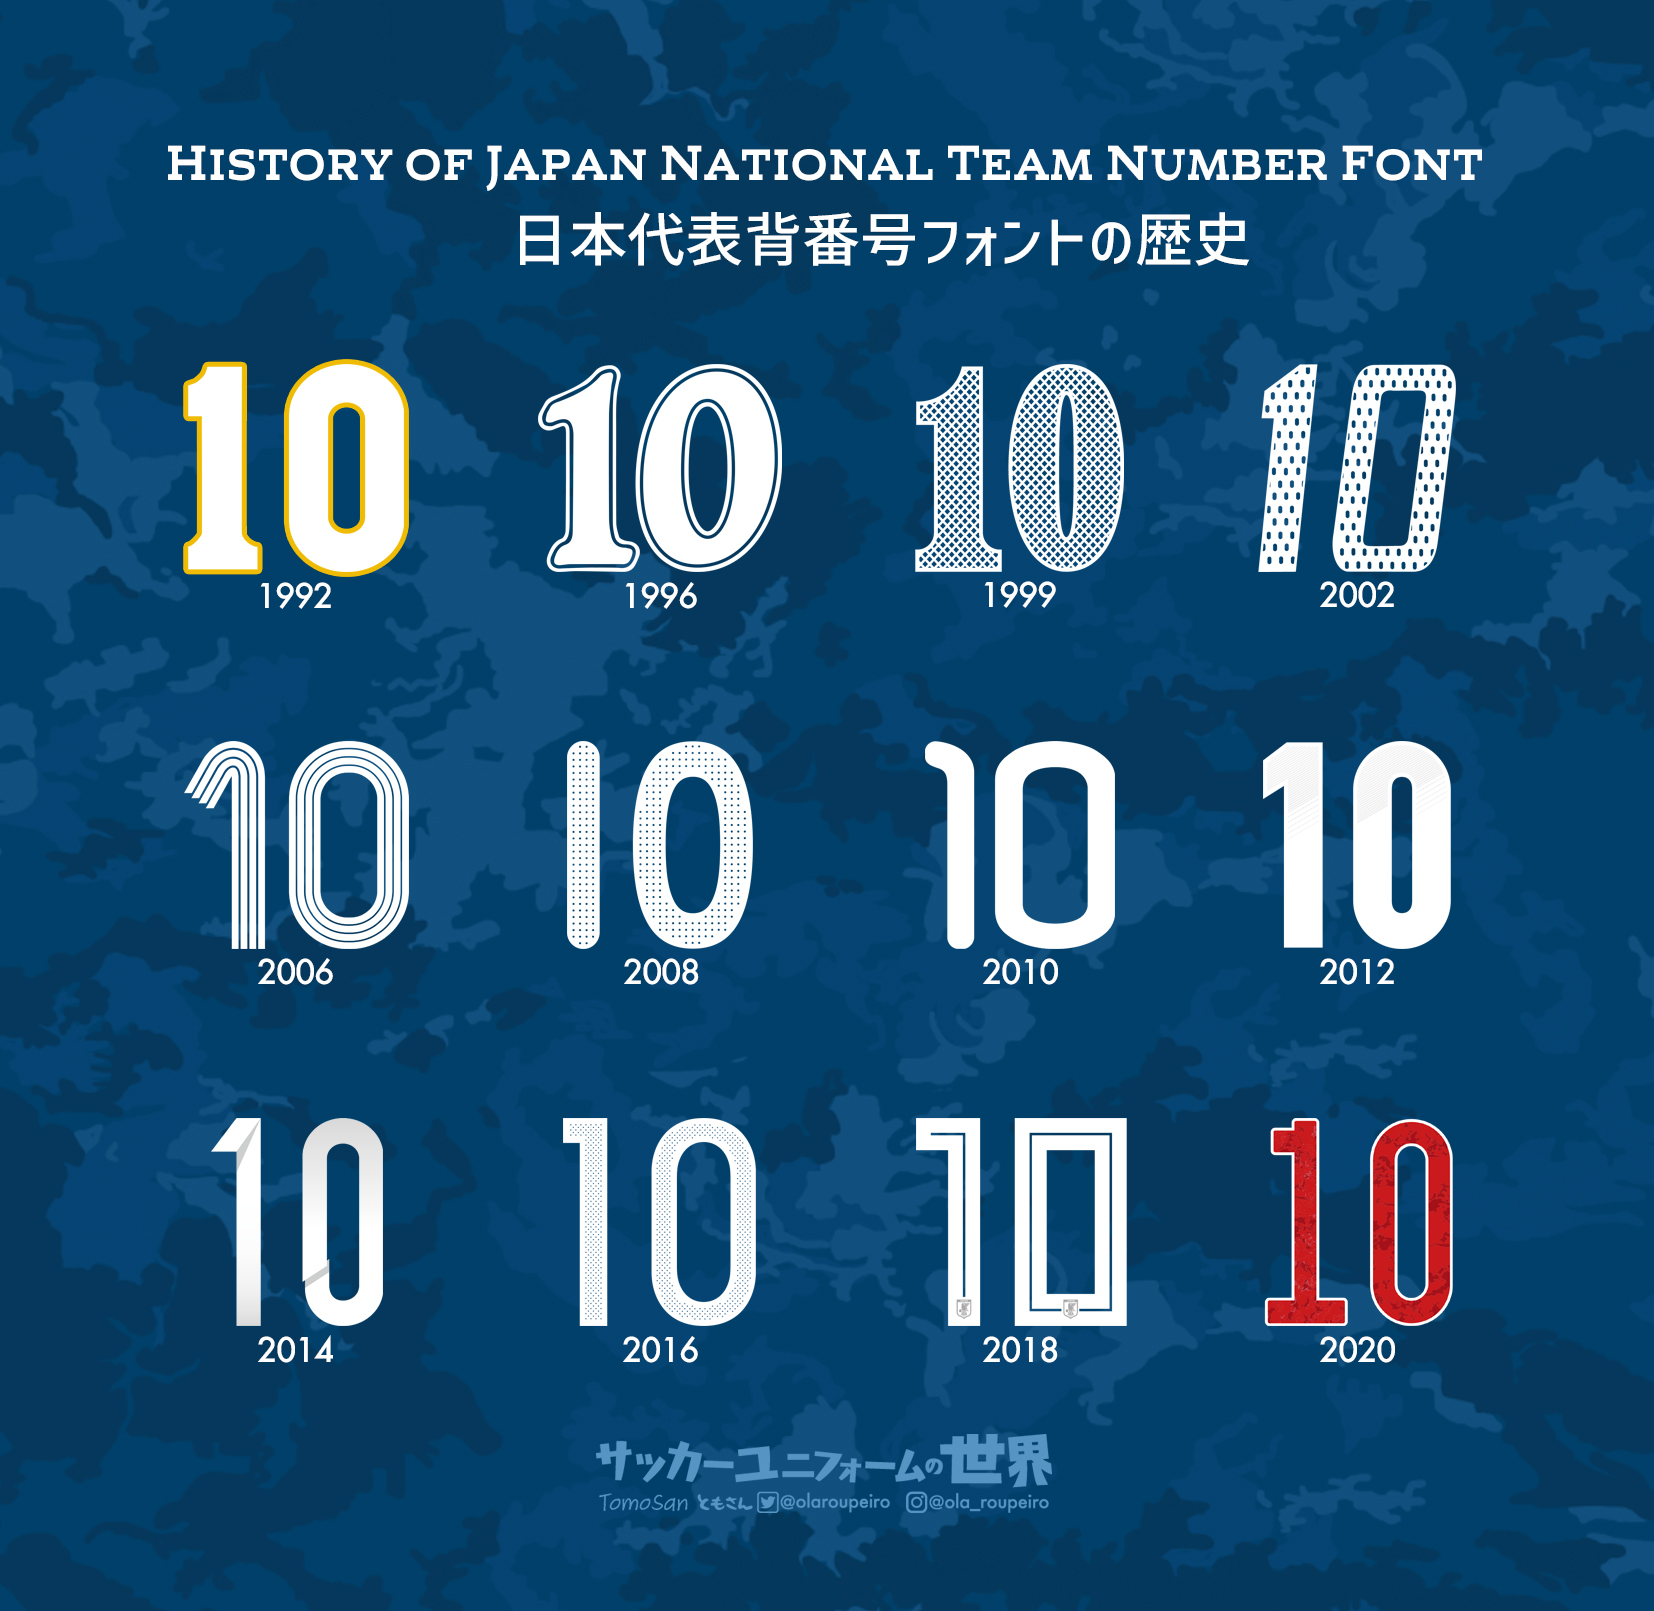 ともさん Tomosan サッカーユニフォームの世界 決戦を前に日本代表の歴代背番号フォントを振り返ってみましょう ユニフォームデザインは番号 ネーム フォントを抜きにしては語れない それぞれの時代を彩ったフォント あなたの思い出に残る